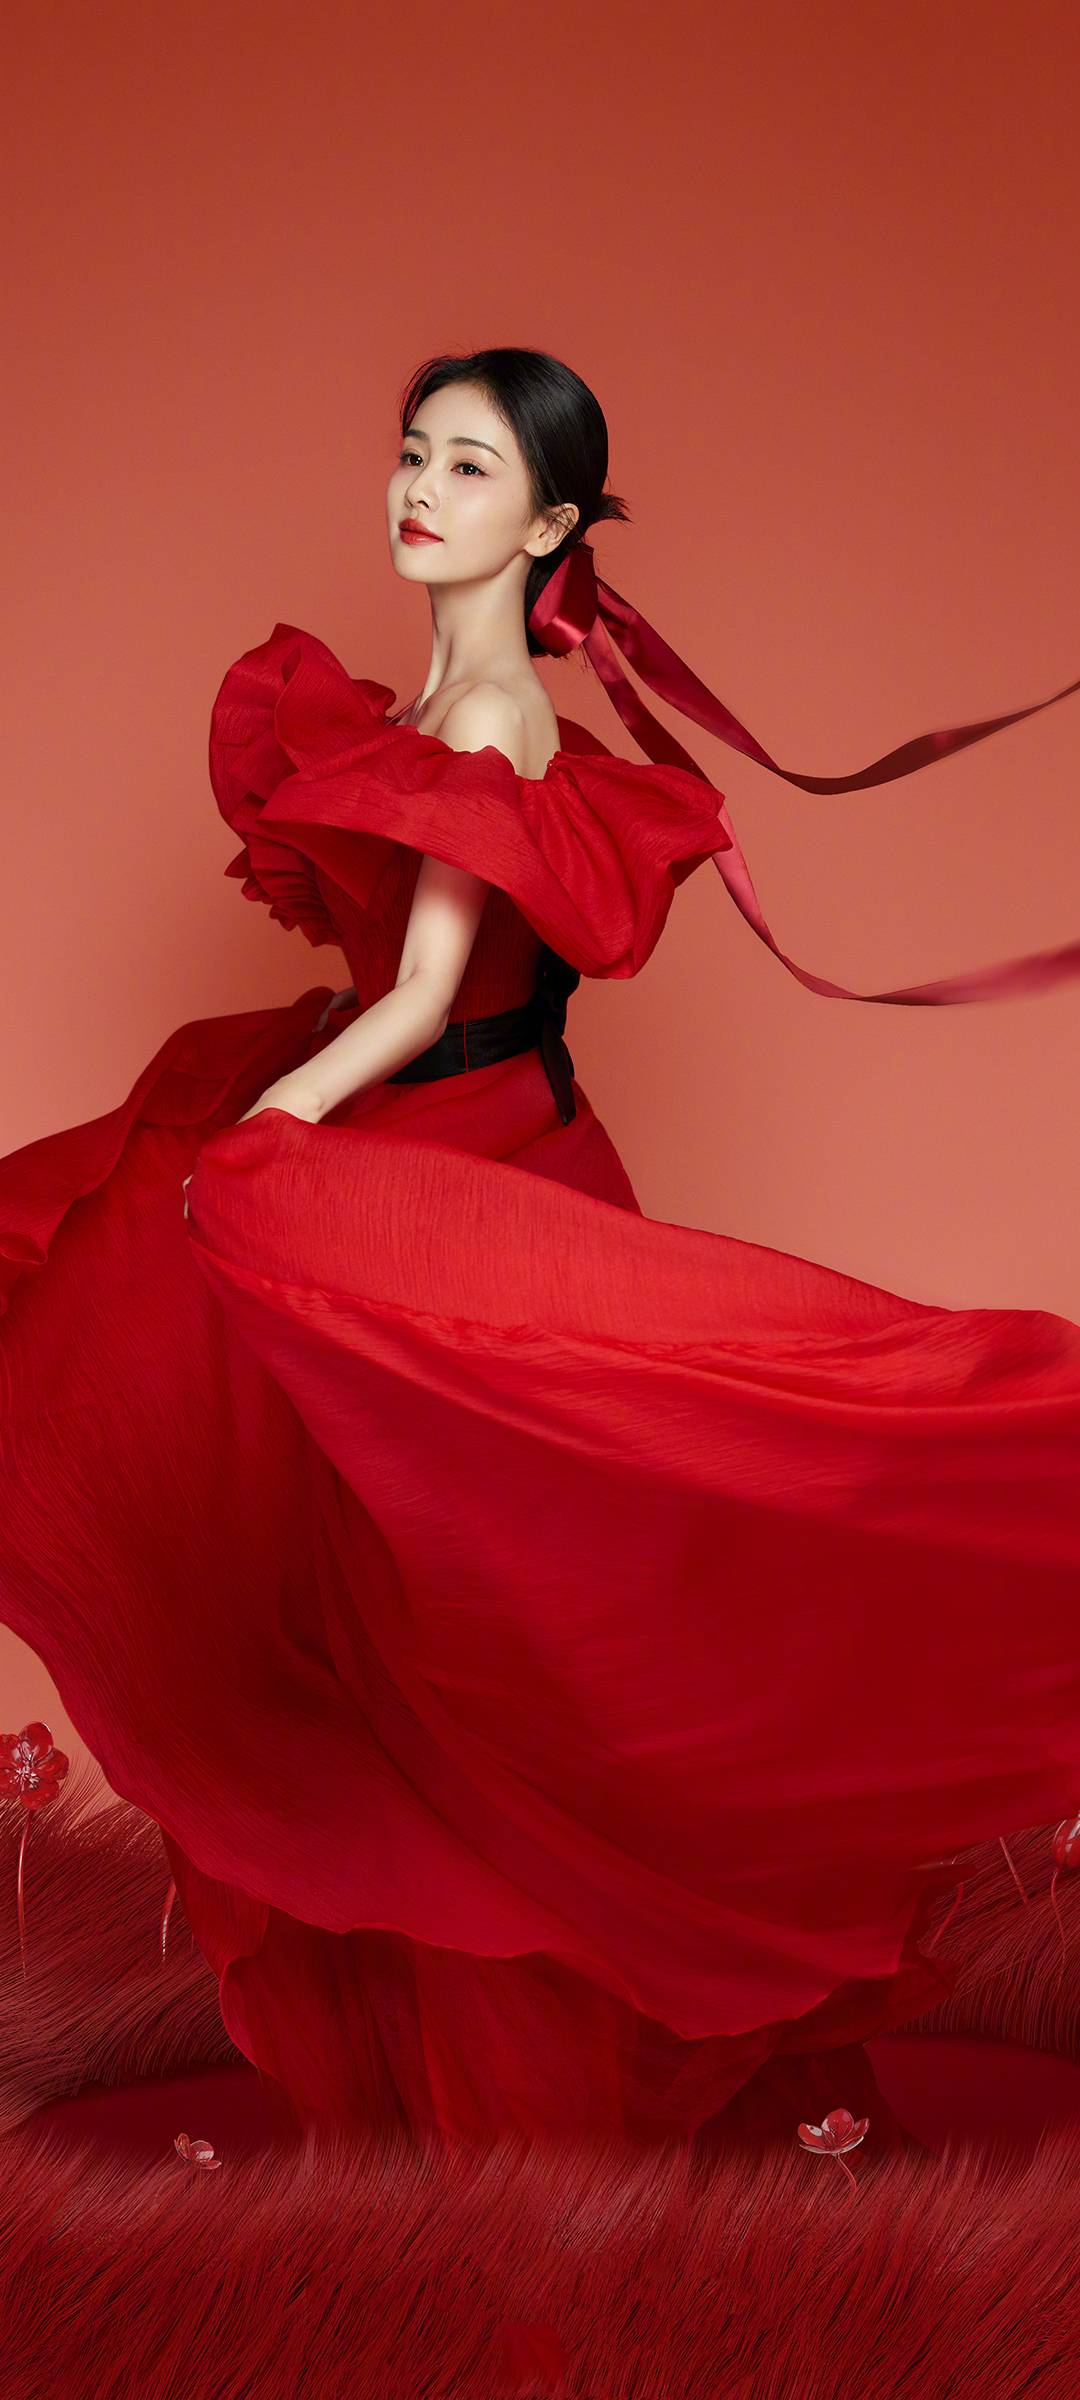 红色裙子养眼气质美女手机壁纸